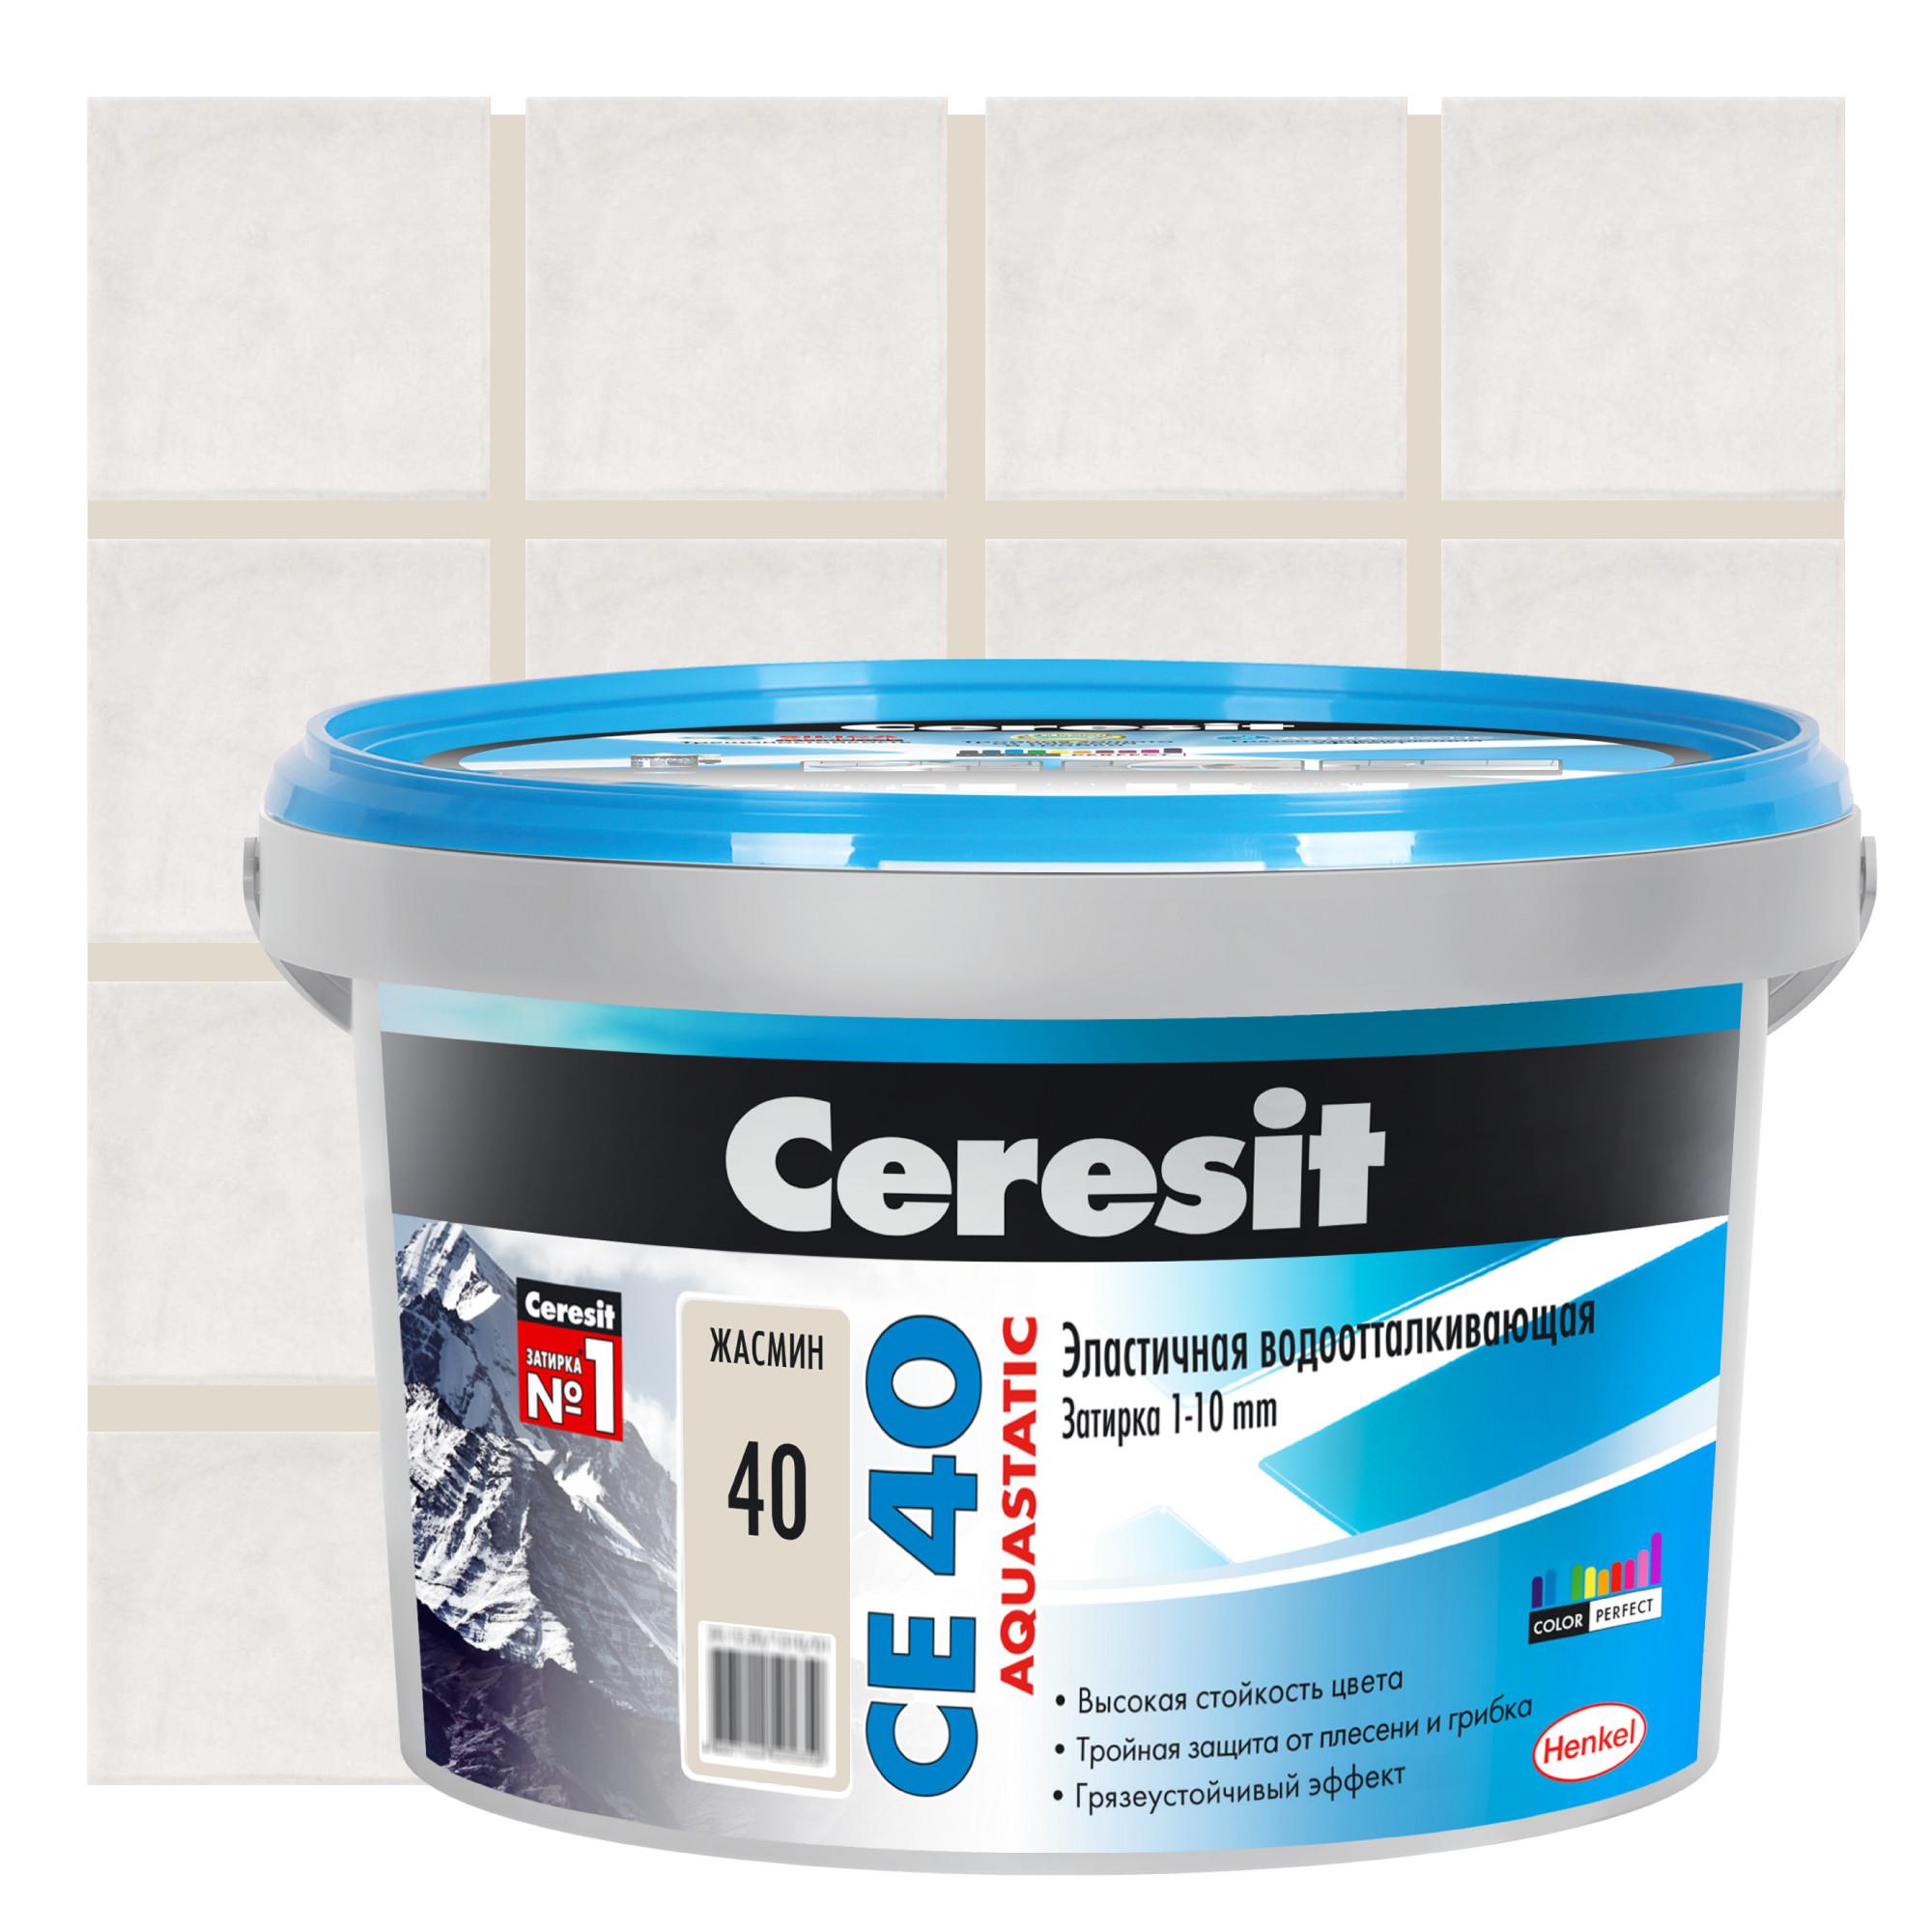 Затирка цементная Ceresit CE 40 водоотталкивающая цвет жасмин 2 кг .